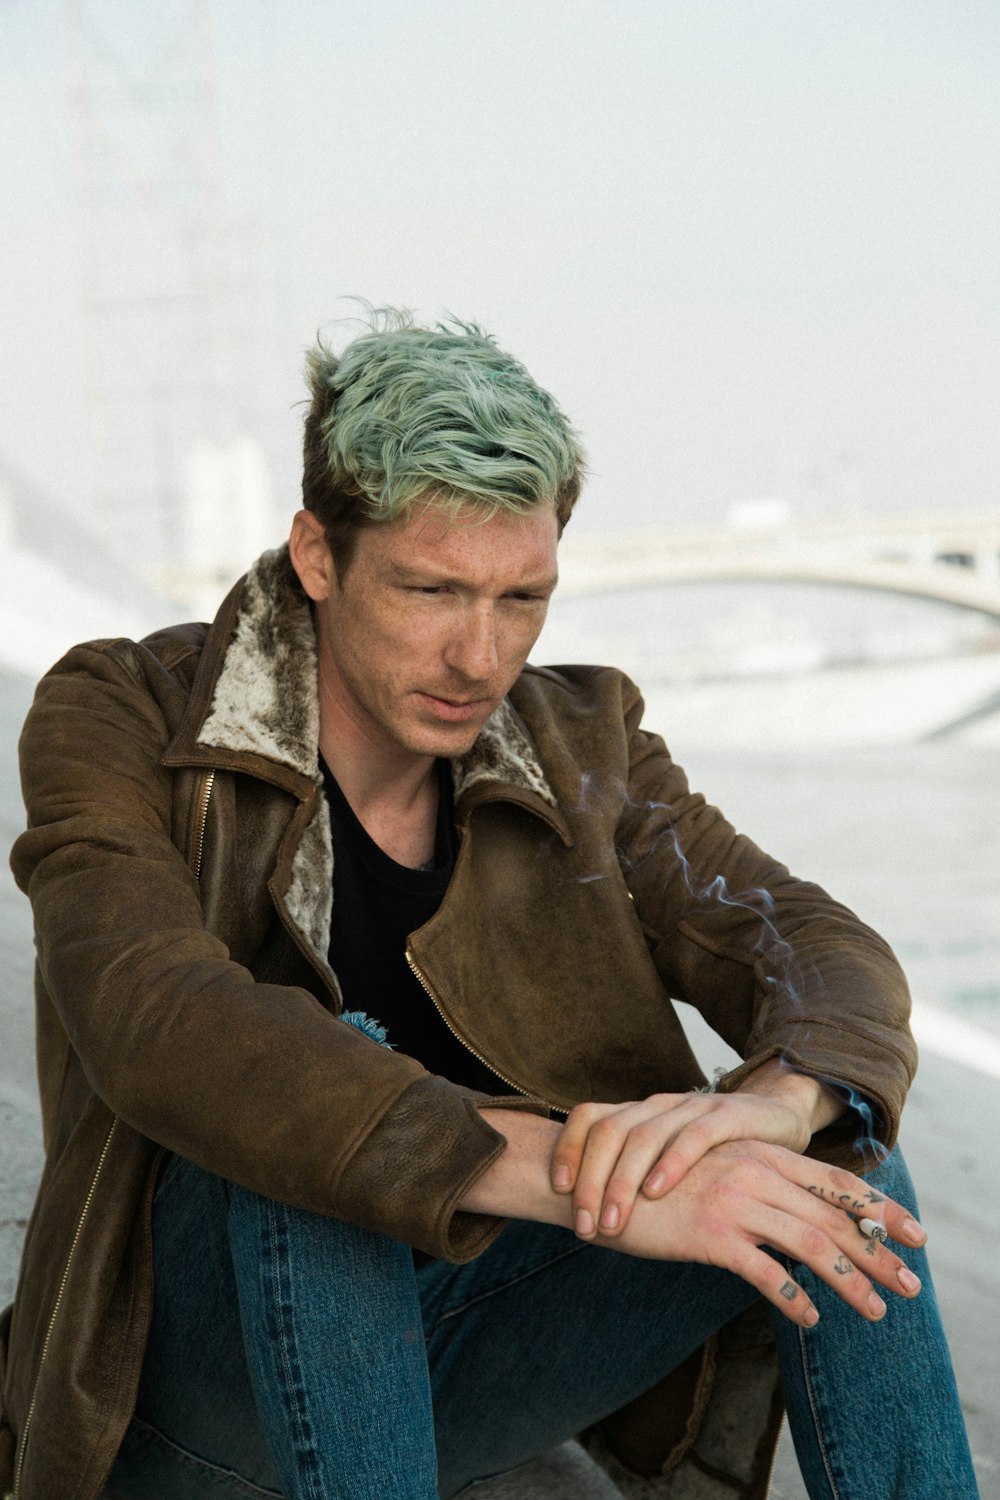 Homem com cabelo verde em camisa preta e casaco marrom senta-se na areia marrom perto da ponte suspensa branca